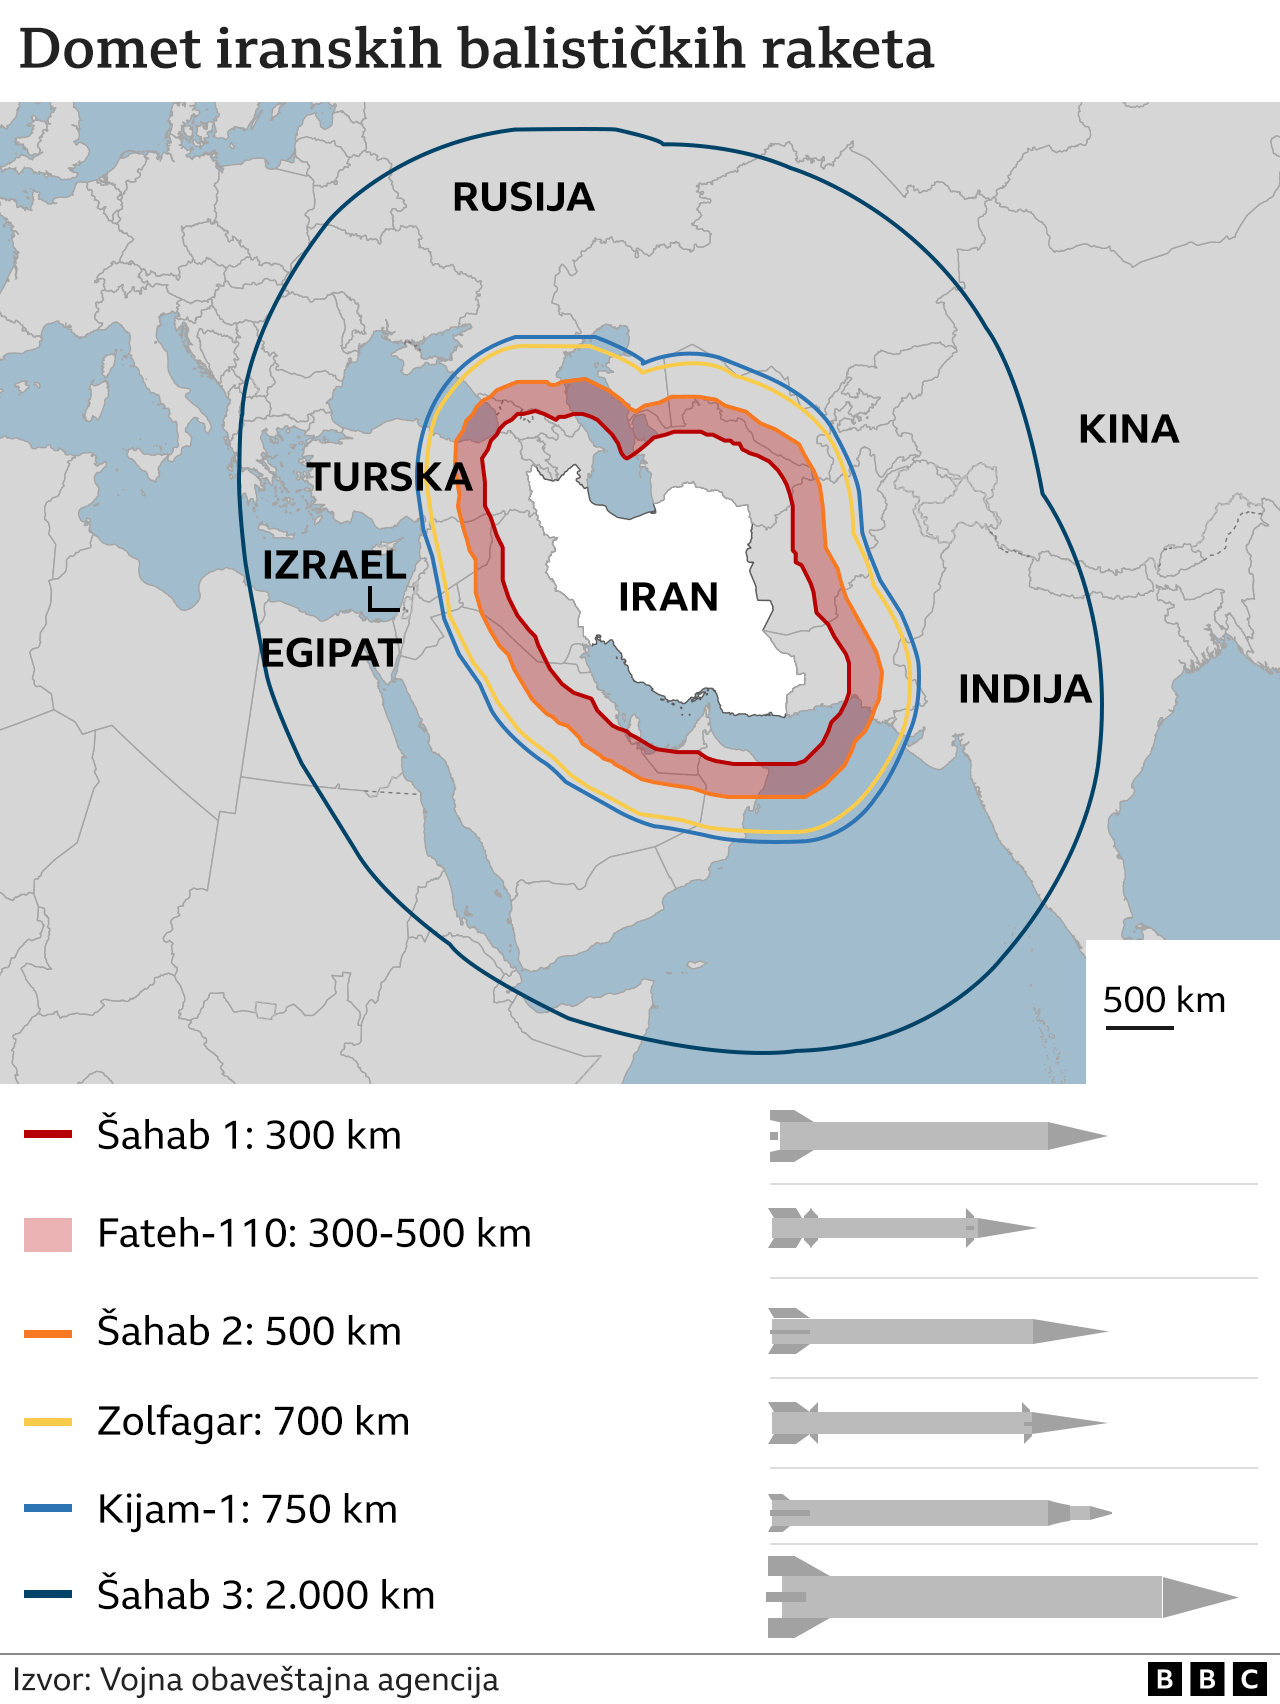 iranske rakete, iransko oružje, domet iranskih raketa